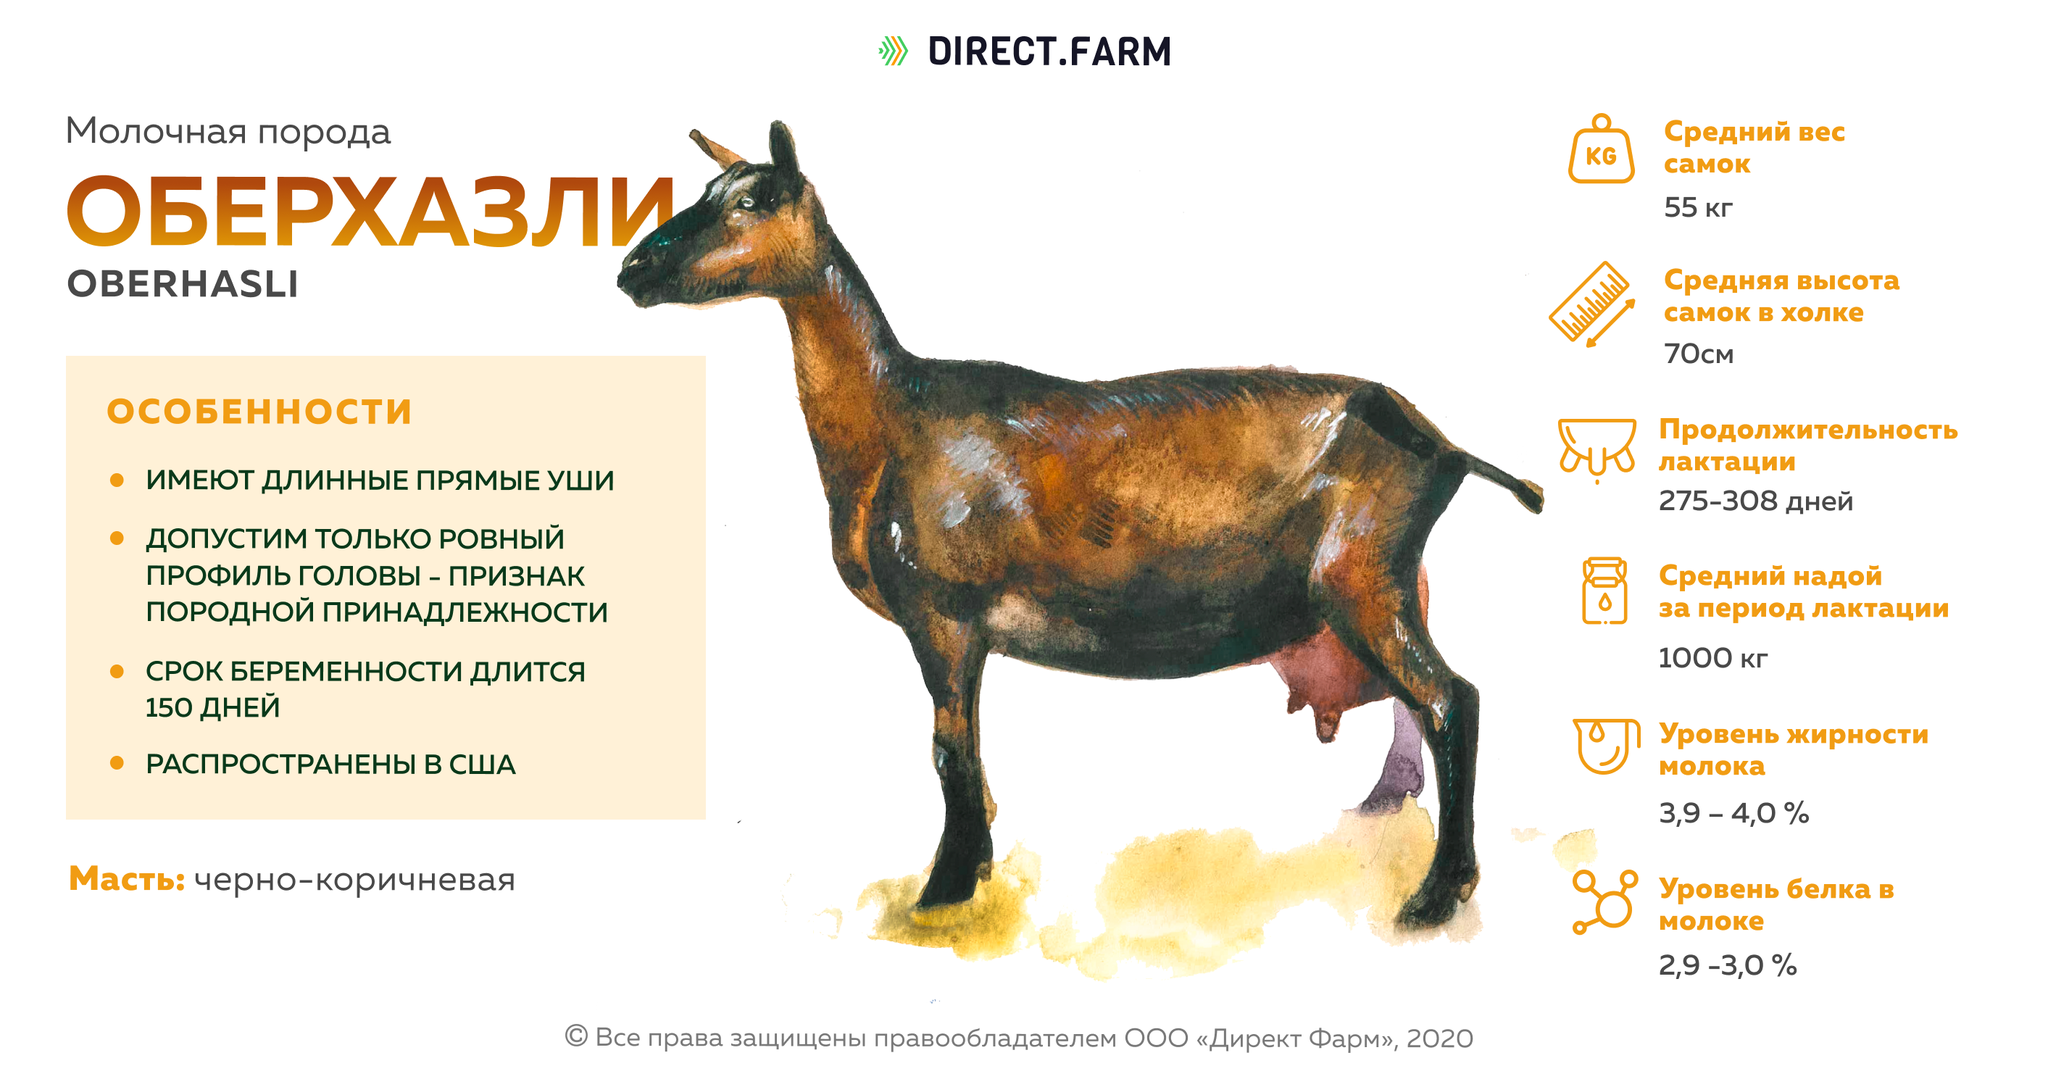 Зааненская порода коз: описание, фото, содержание, кормление